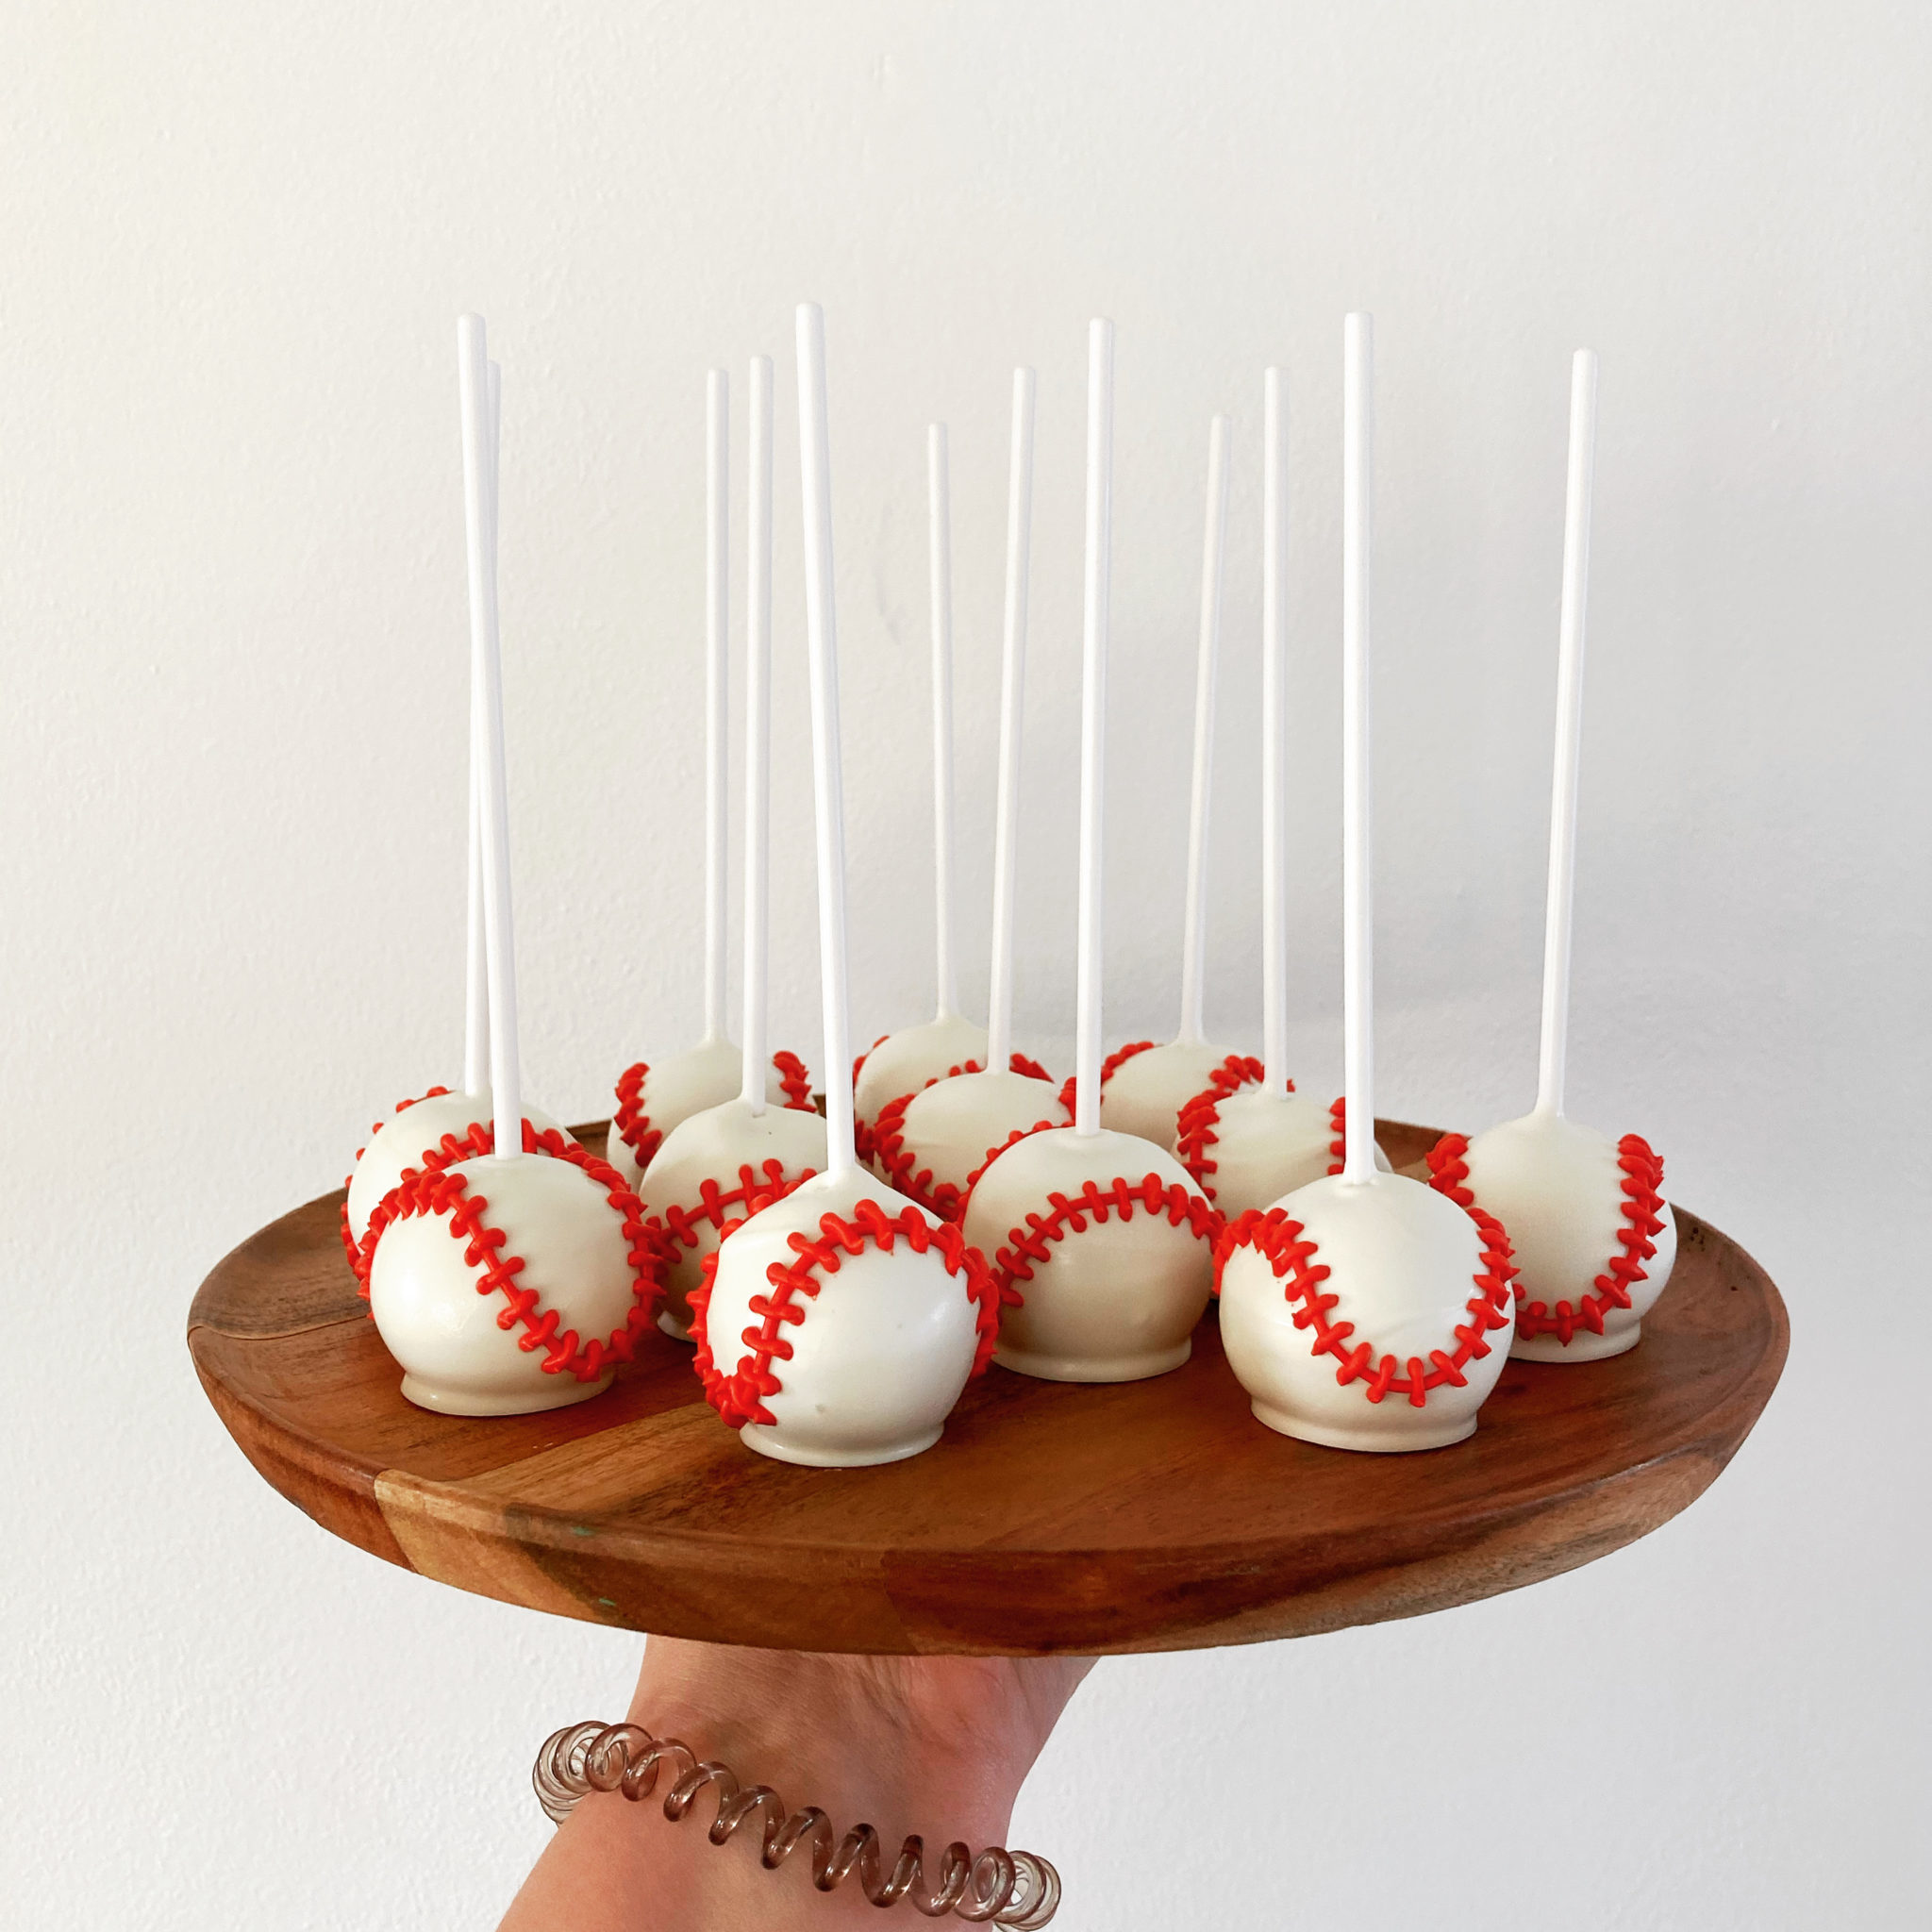 Baseball cake pops